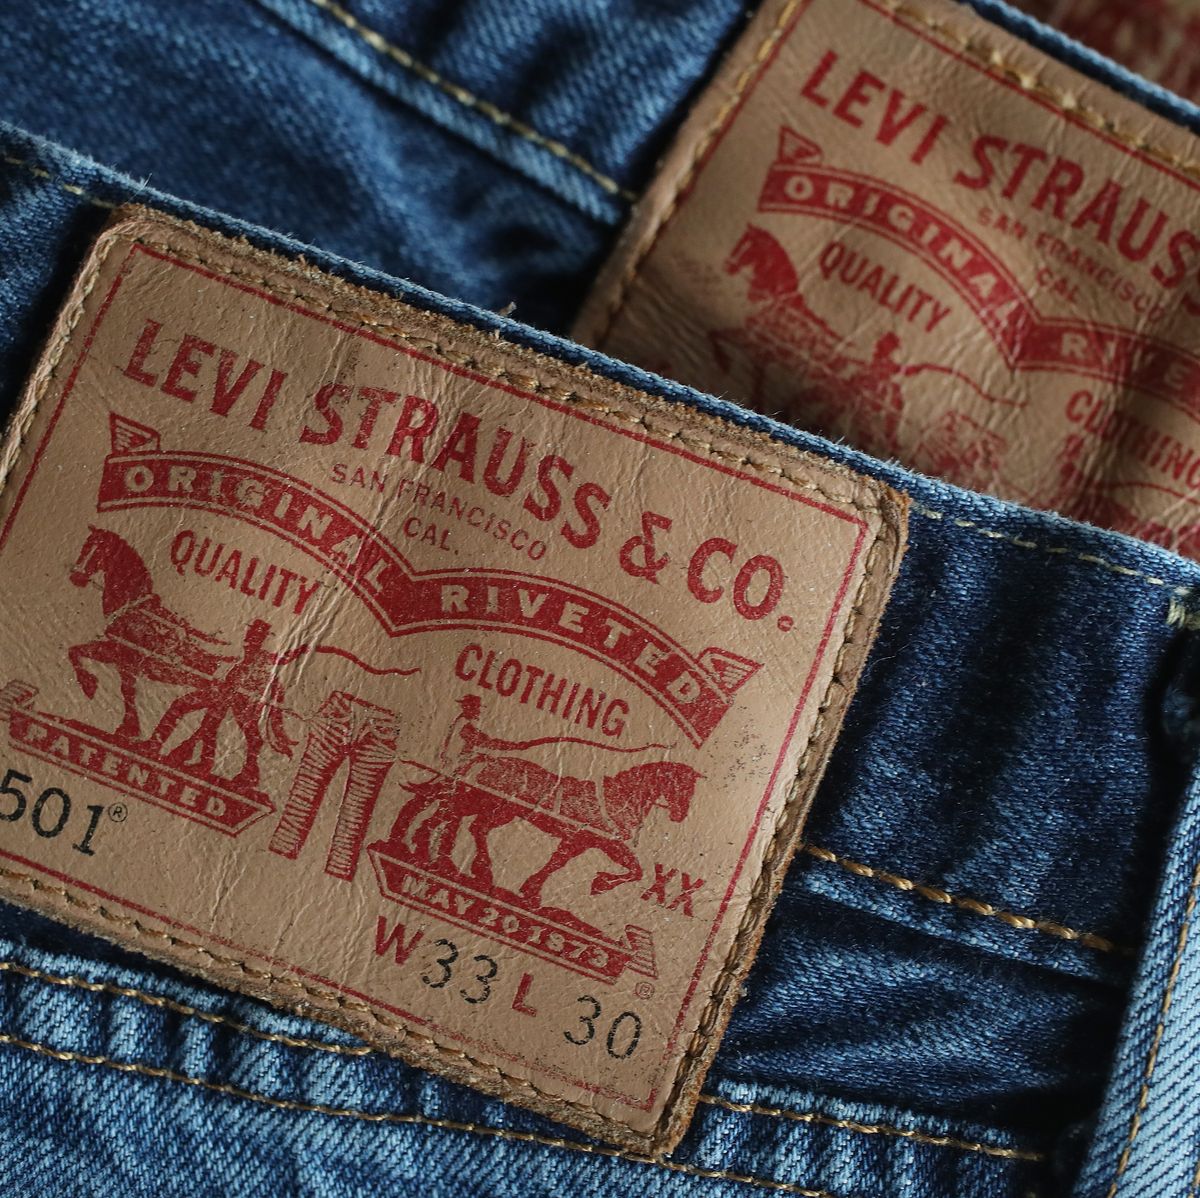  Levi's - Pantalones de mezclilla 501 Original Shrink-to-Fit  para hombre (Legacy), Rigid : Ropa, Zapatos y Joyería